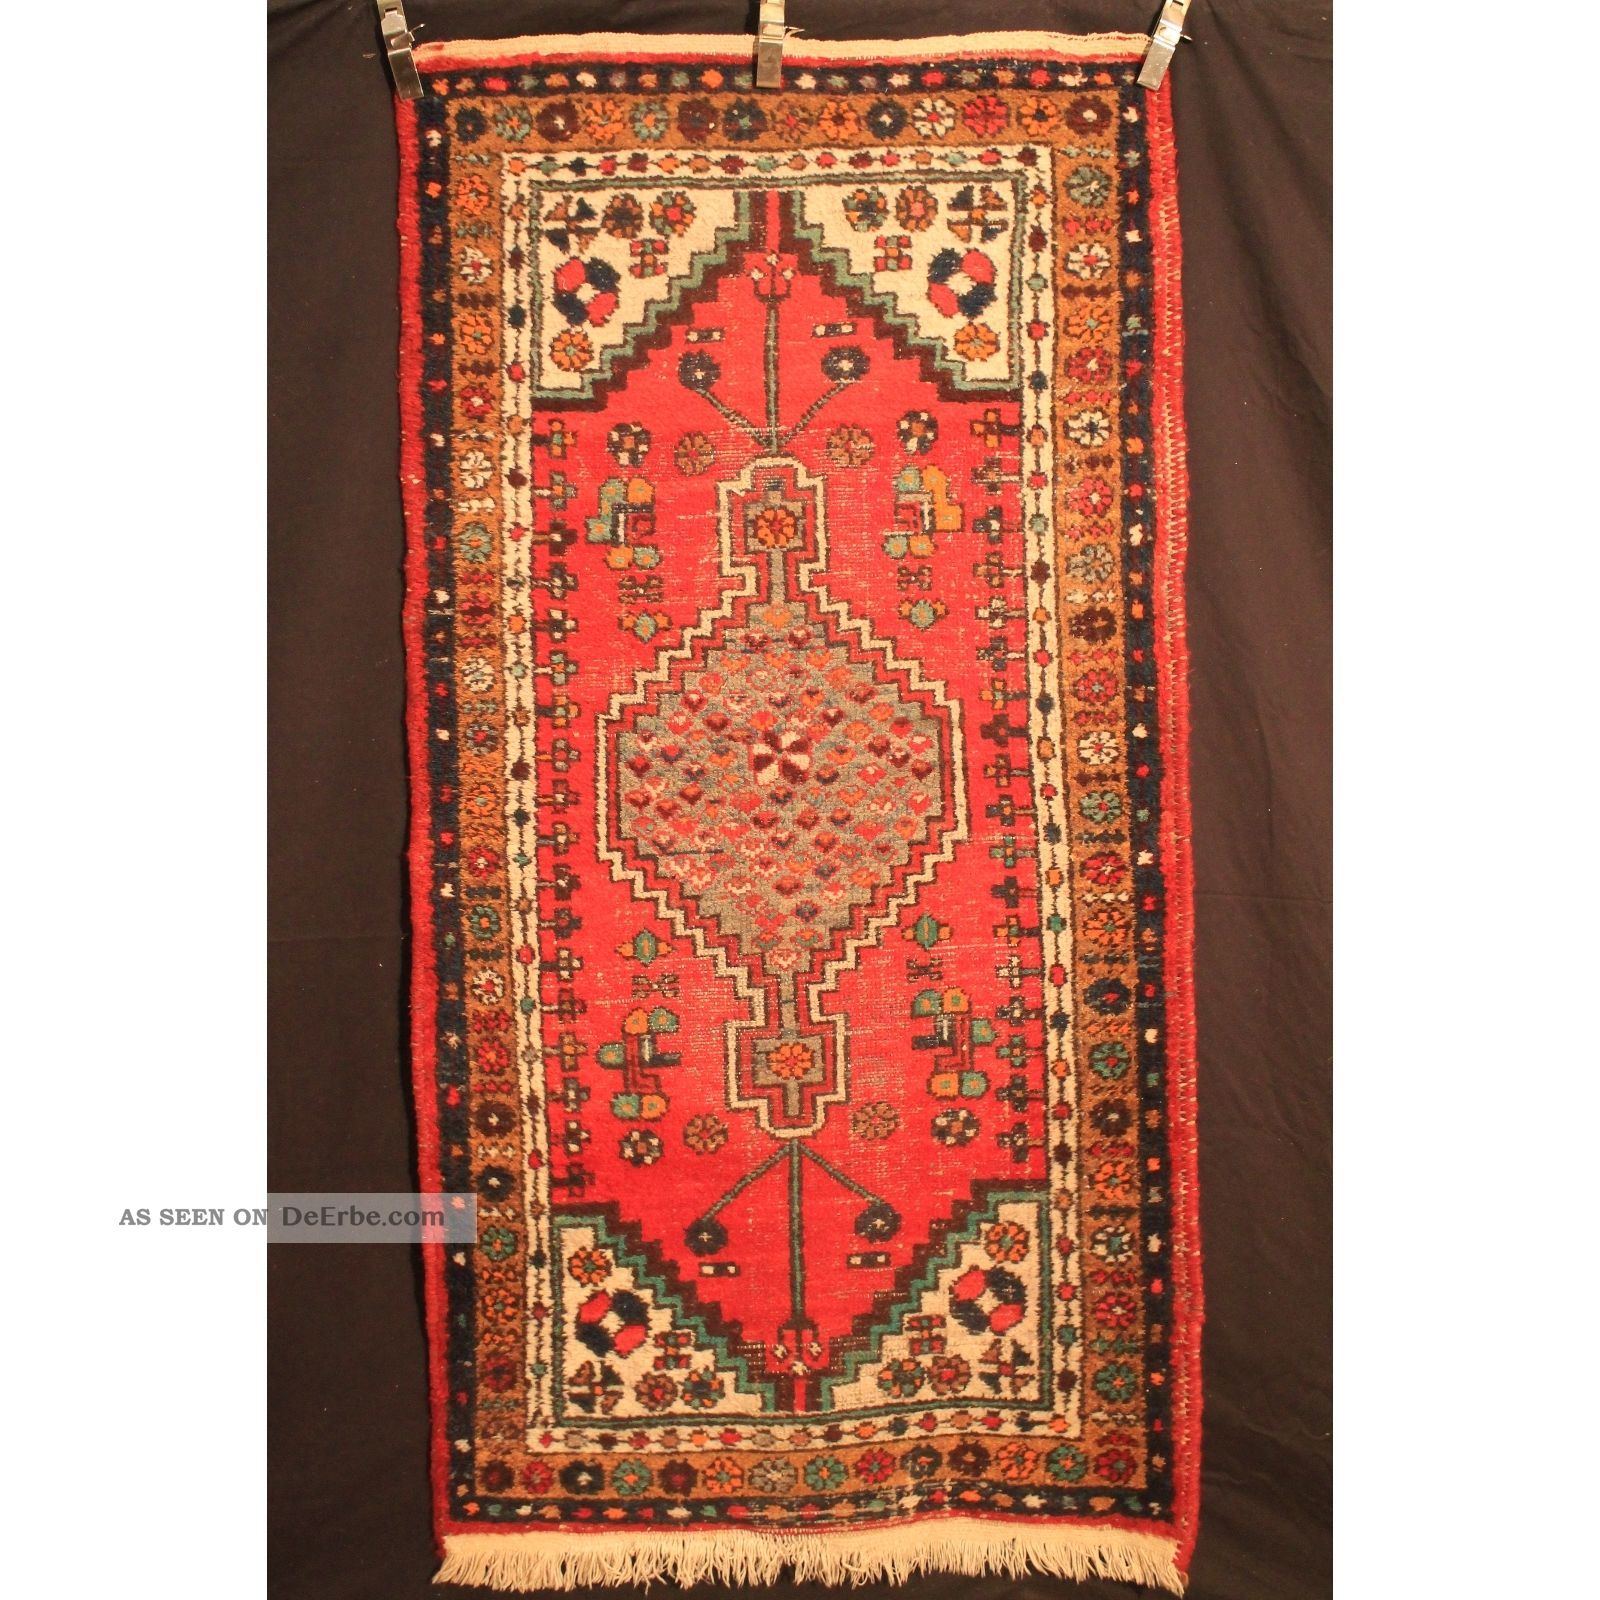 Alt Handgeknüpft Orient Teppich Malaya Kurde Old Rug Carpet Tappeto 190x100cm Teppiche & Flachgewebe Bild